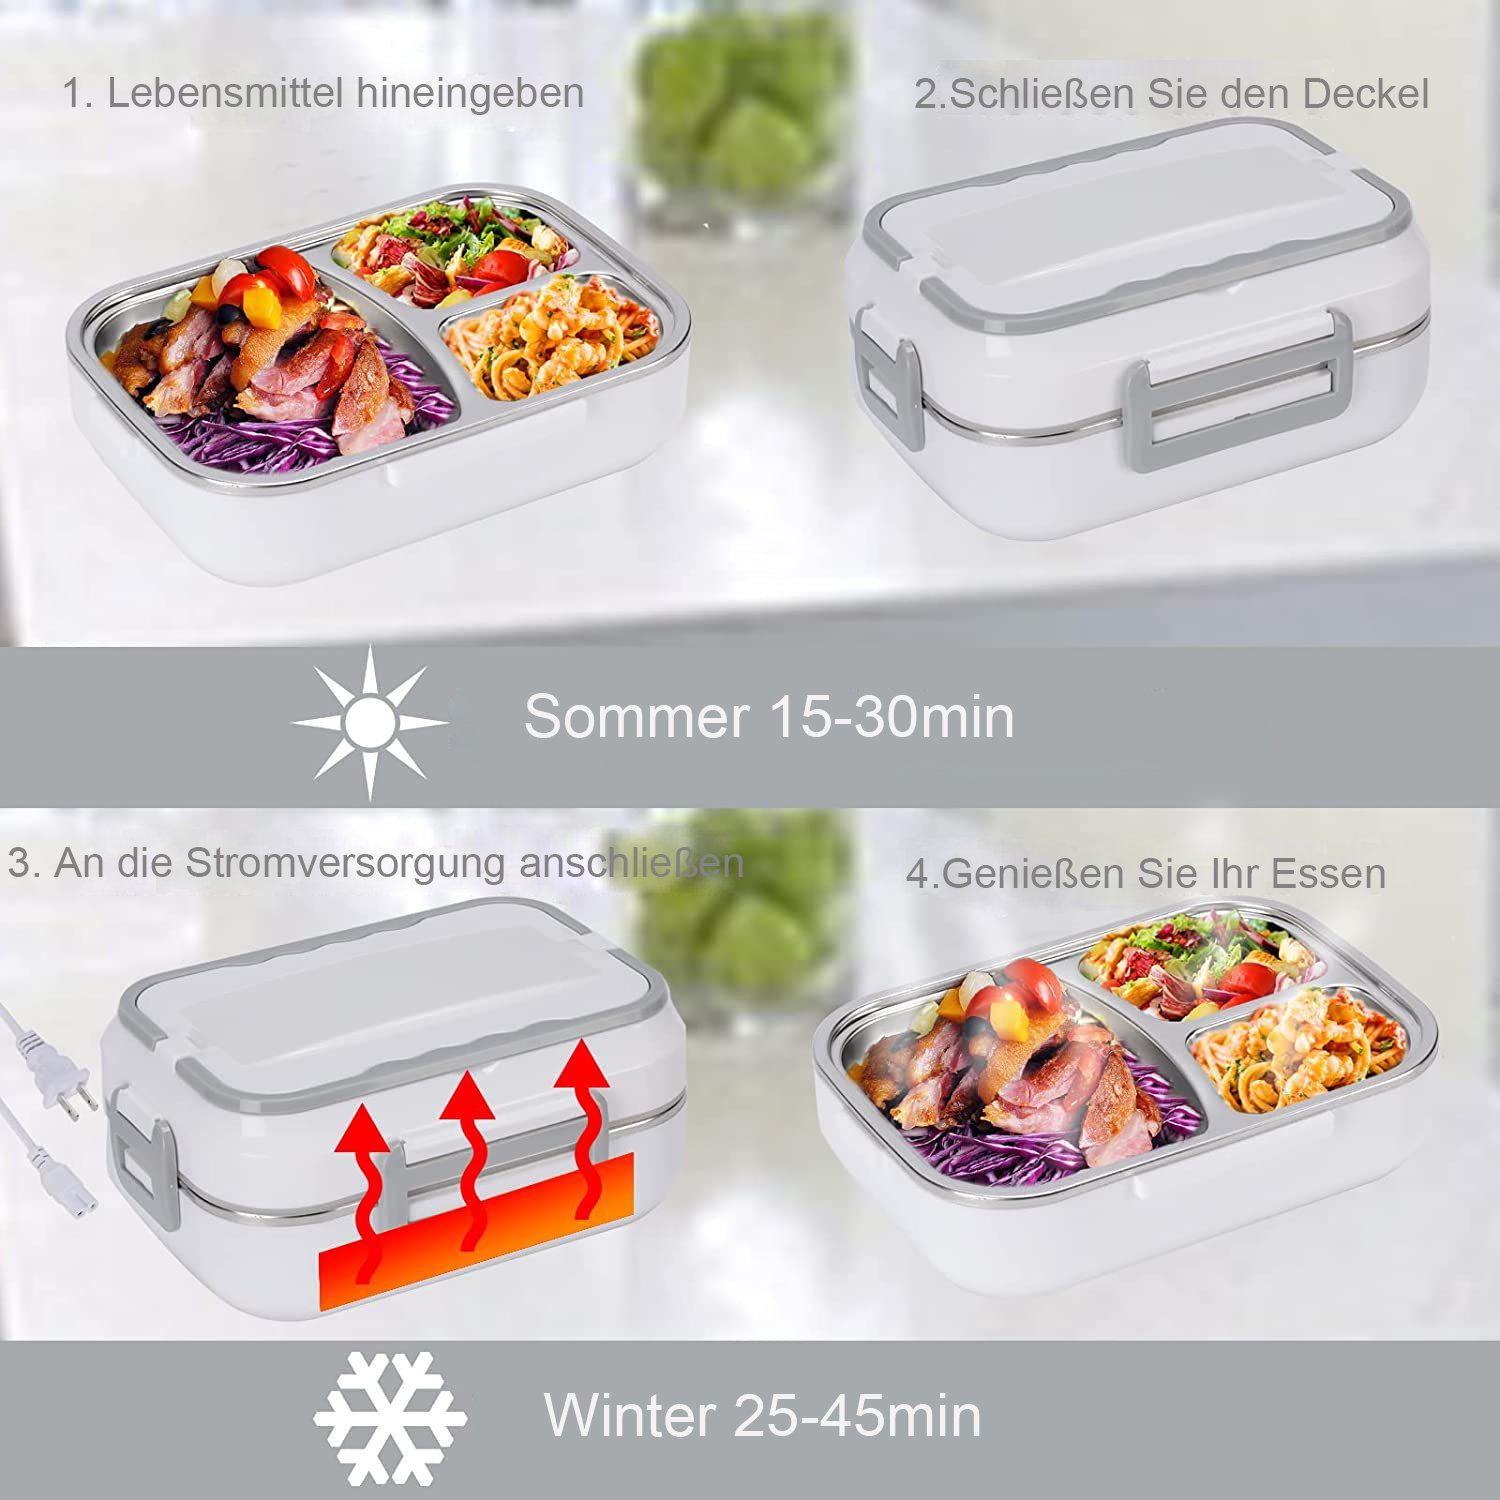 Aoucheni Elektrische Lunchbox Elektrische Tragbarer Zuhause Lunchbox Auto & Warmhaltebehälter Für